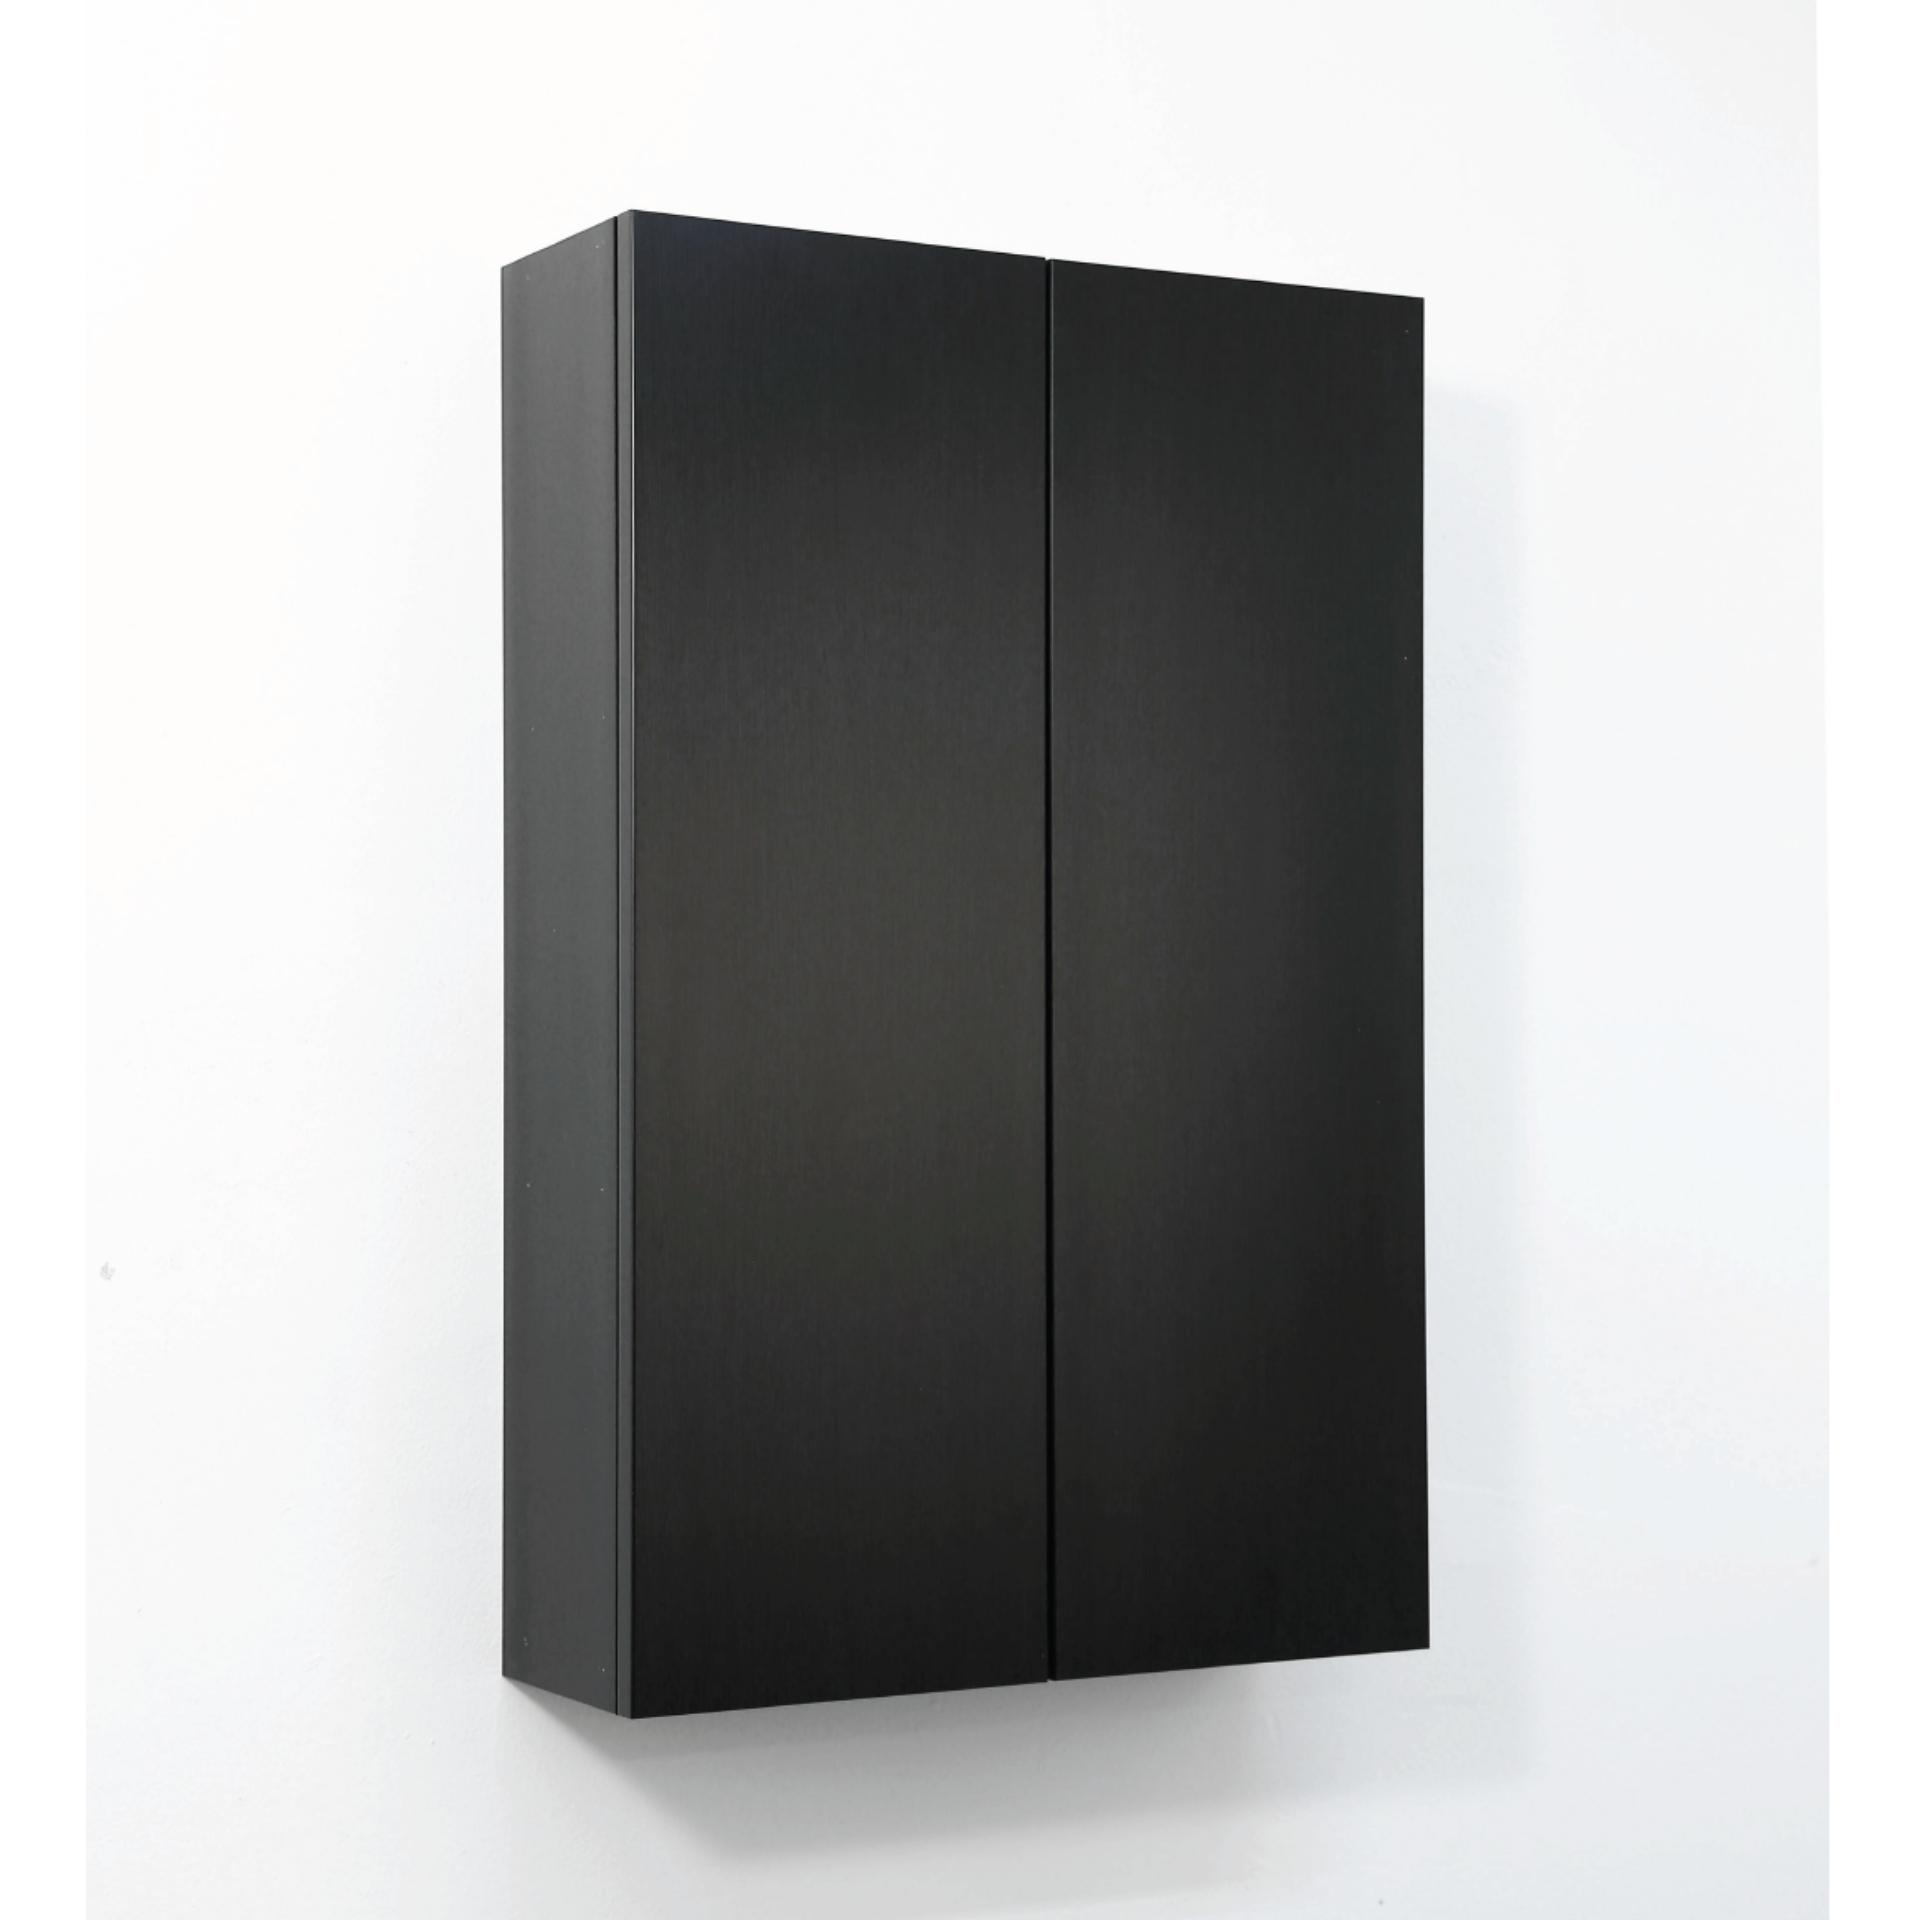 Nội thất phòng tắm -> Tủ gương treo phòng tắm -> Black Modern Cabinet